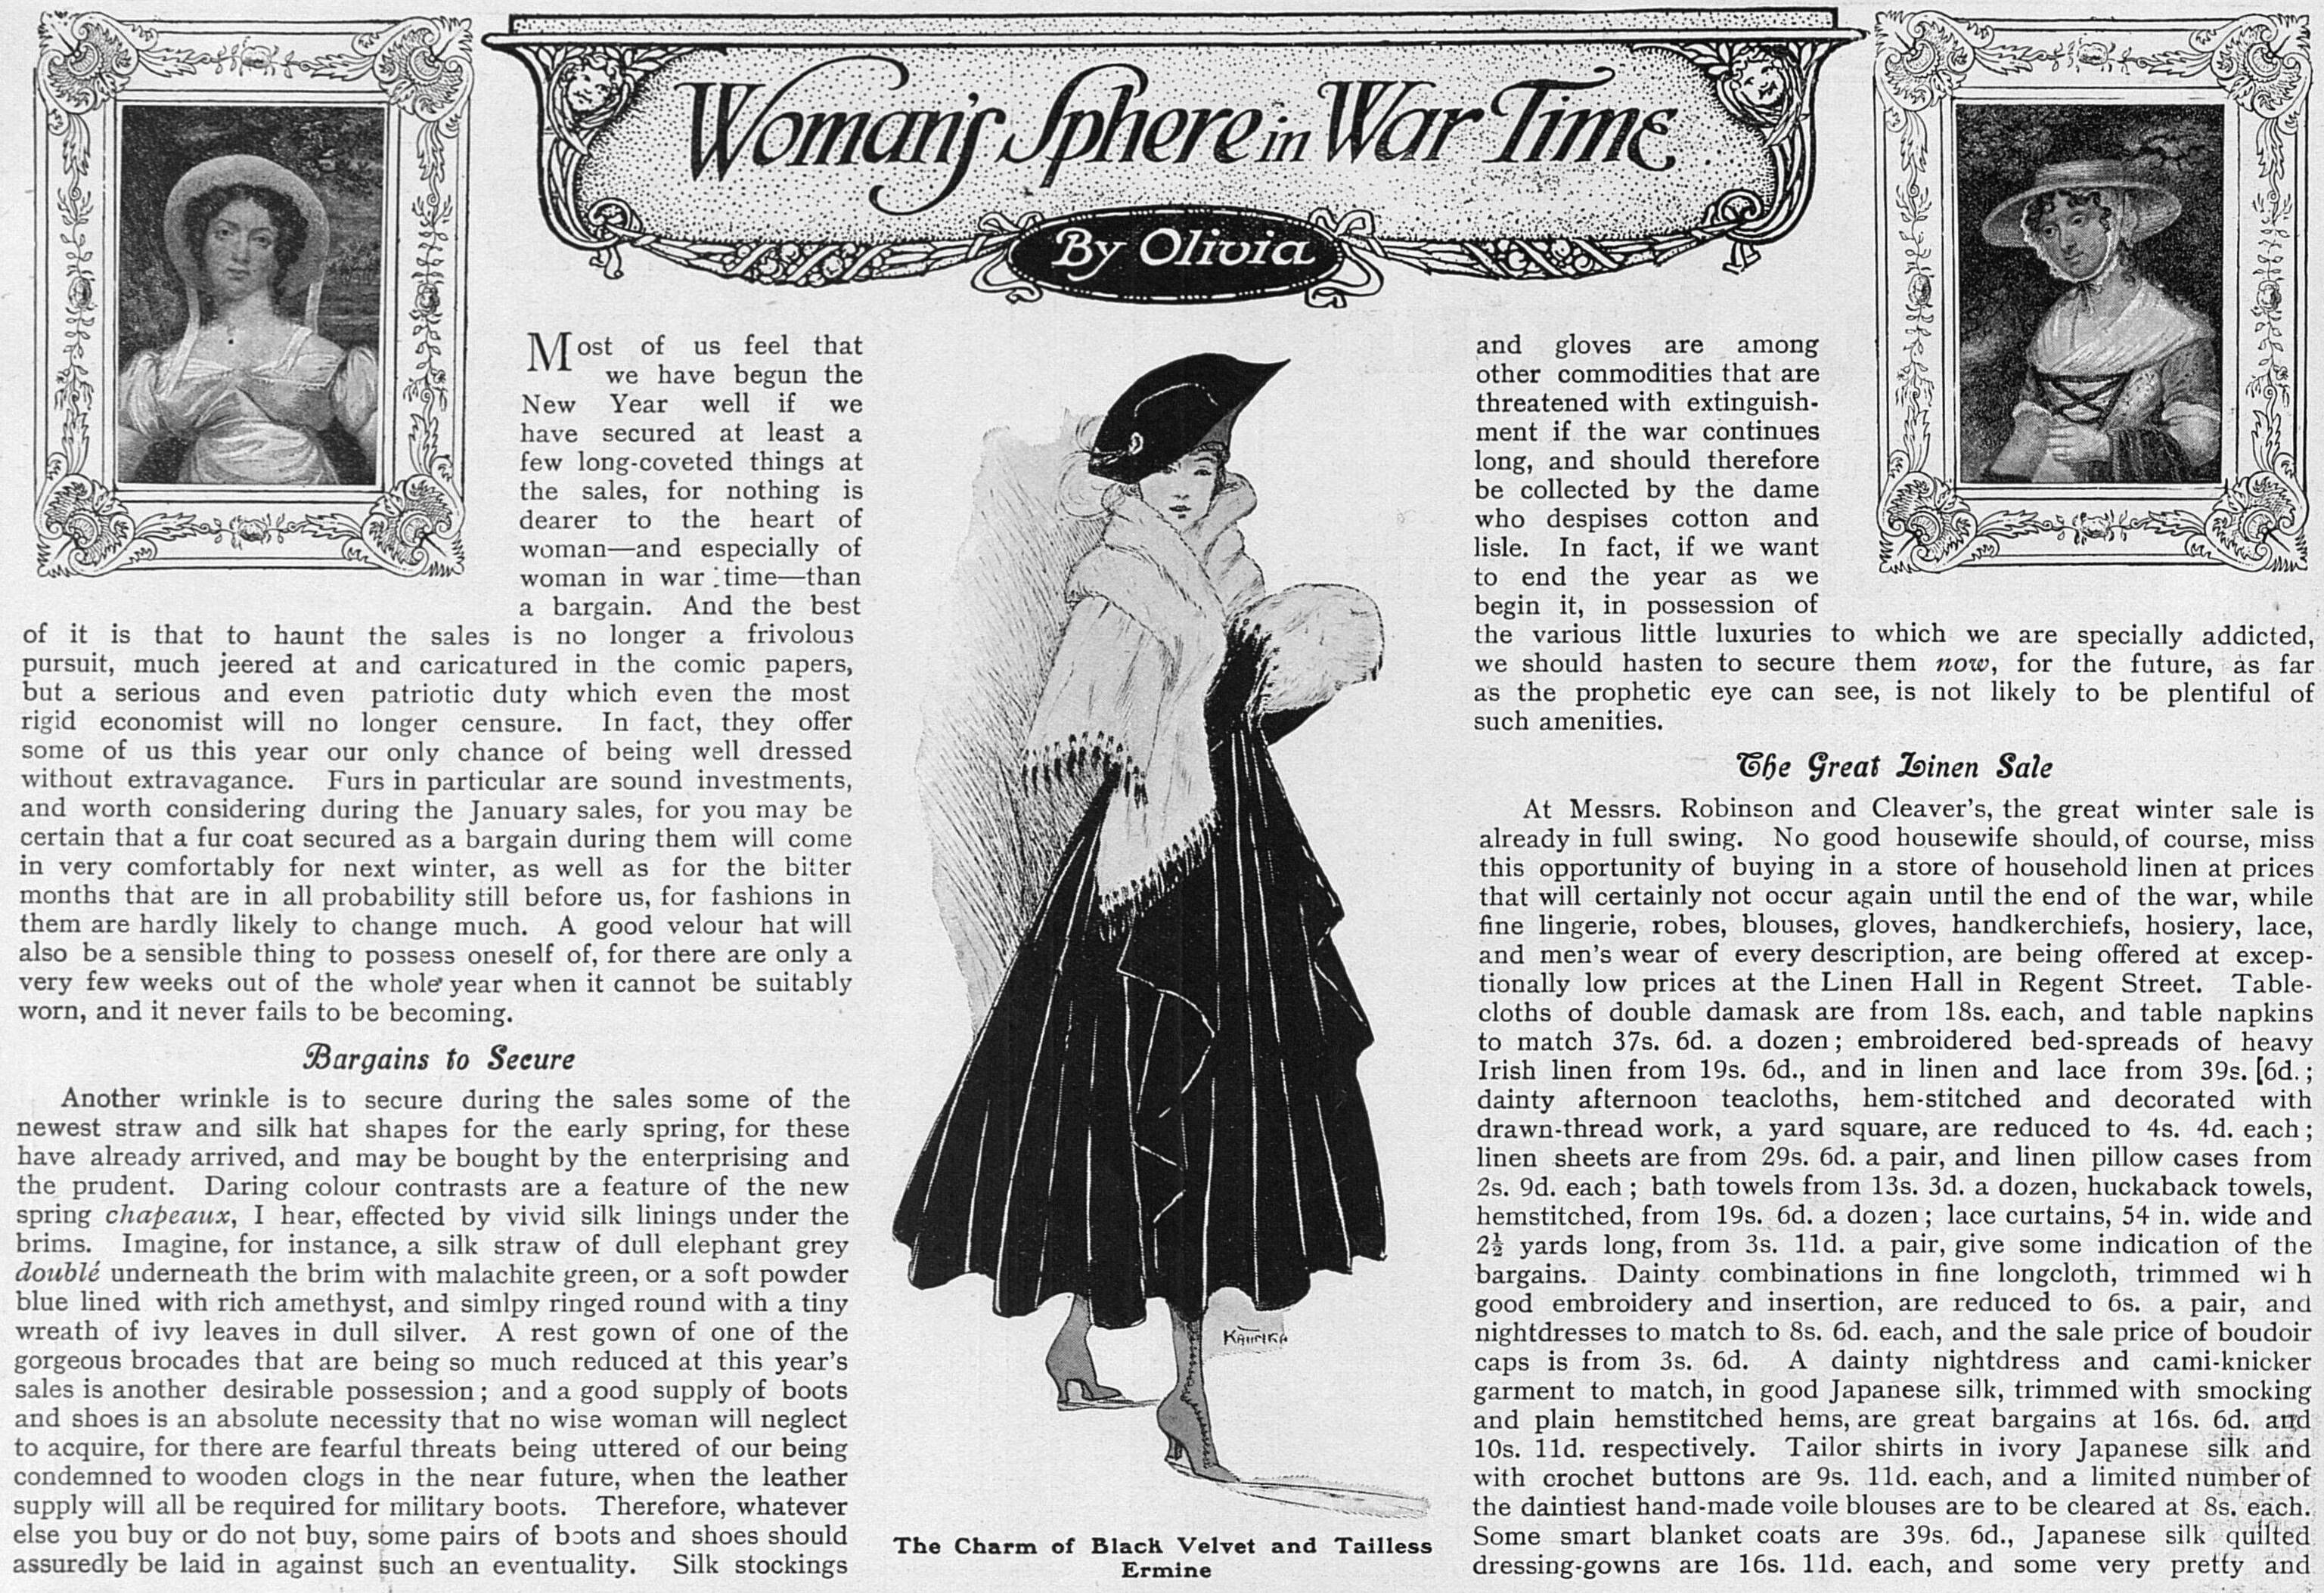 WomansSphereInWarTime_6Jan1917